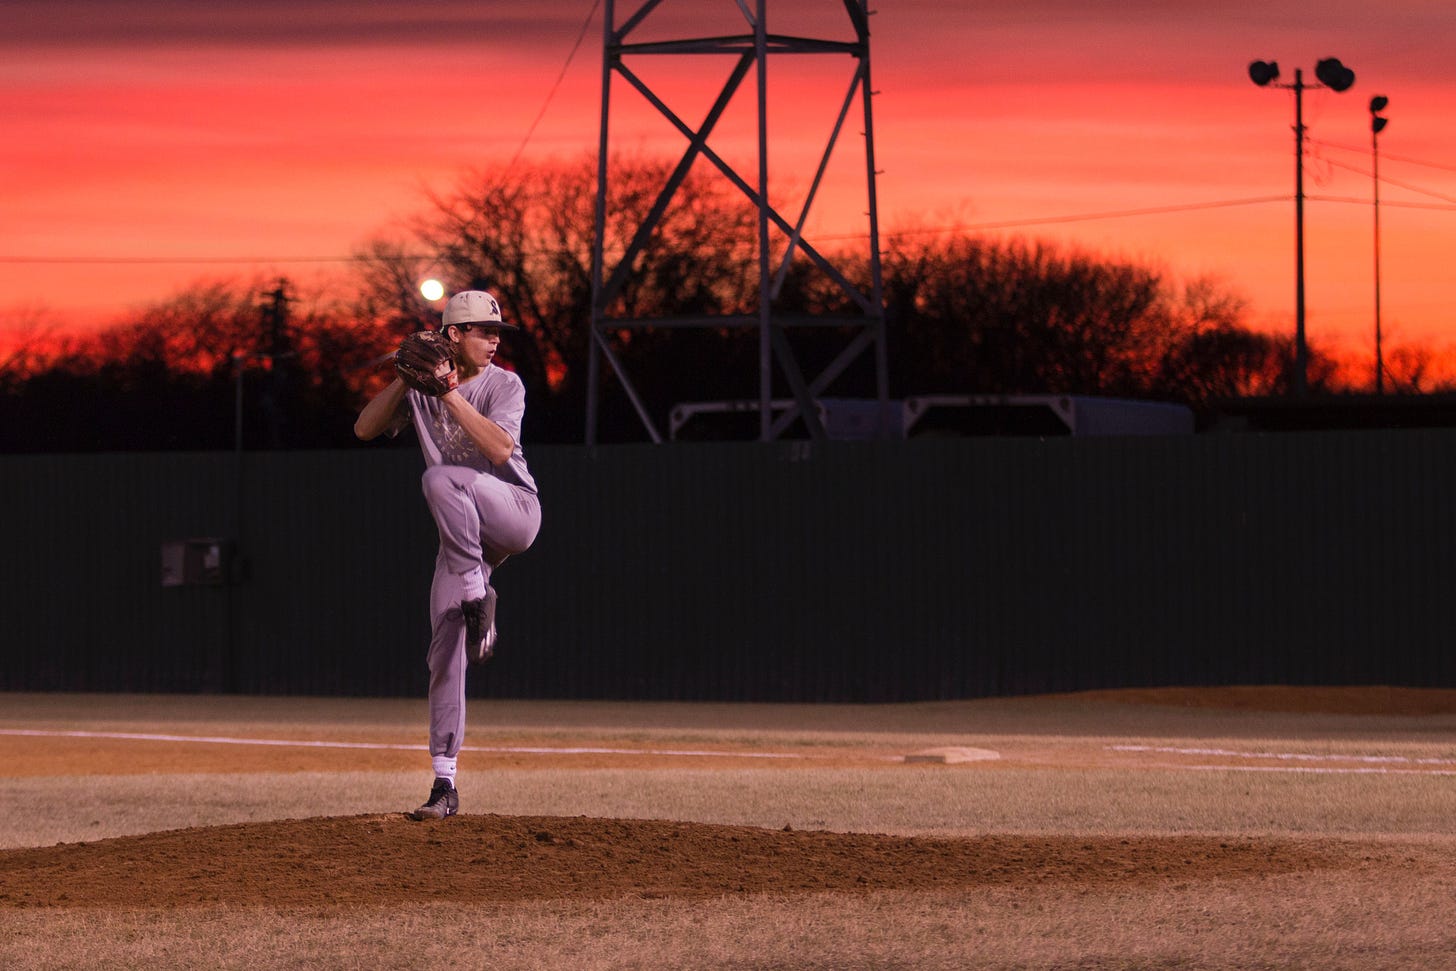 Baseball pitcher pitching at sunset